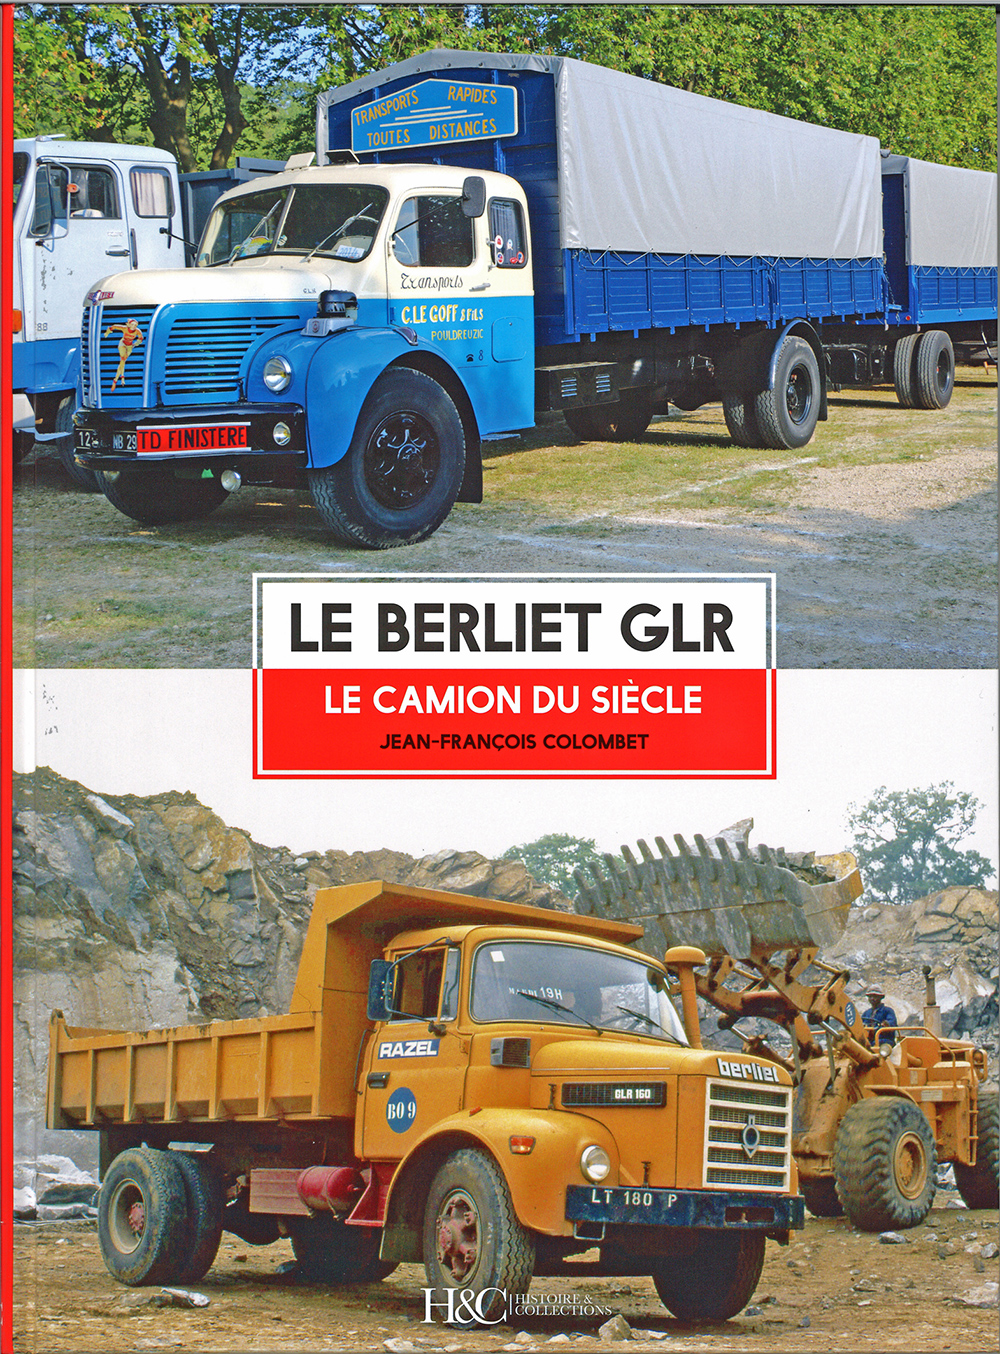 Livre “La Grande Aventure Automobile Lyonnaise” de Pierre-Lucien Pouzet »  Boutique Berliet